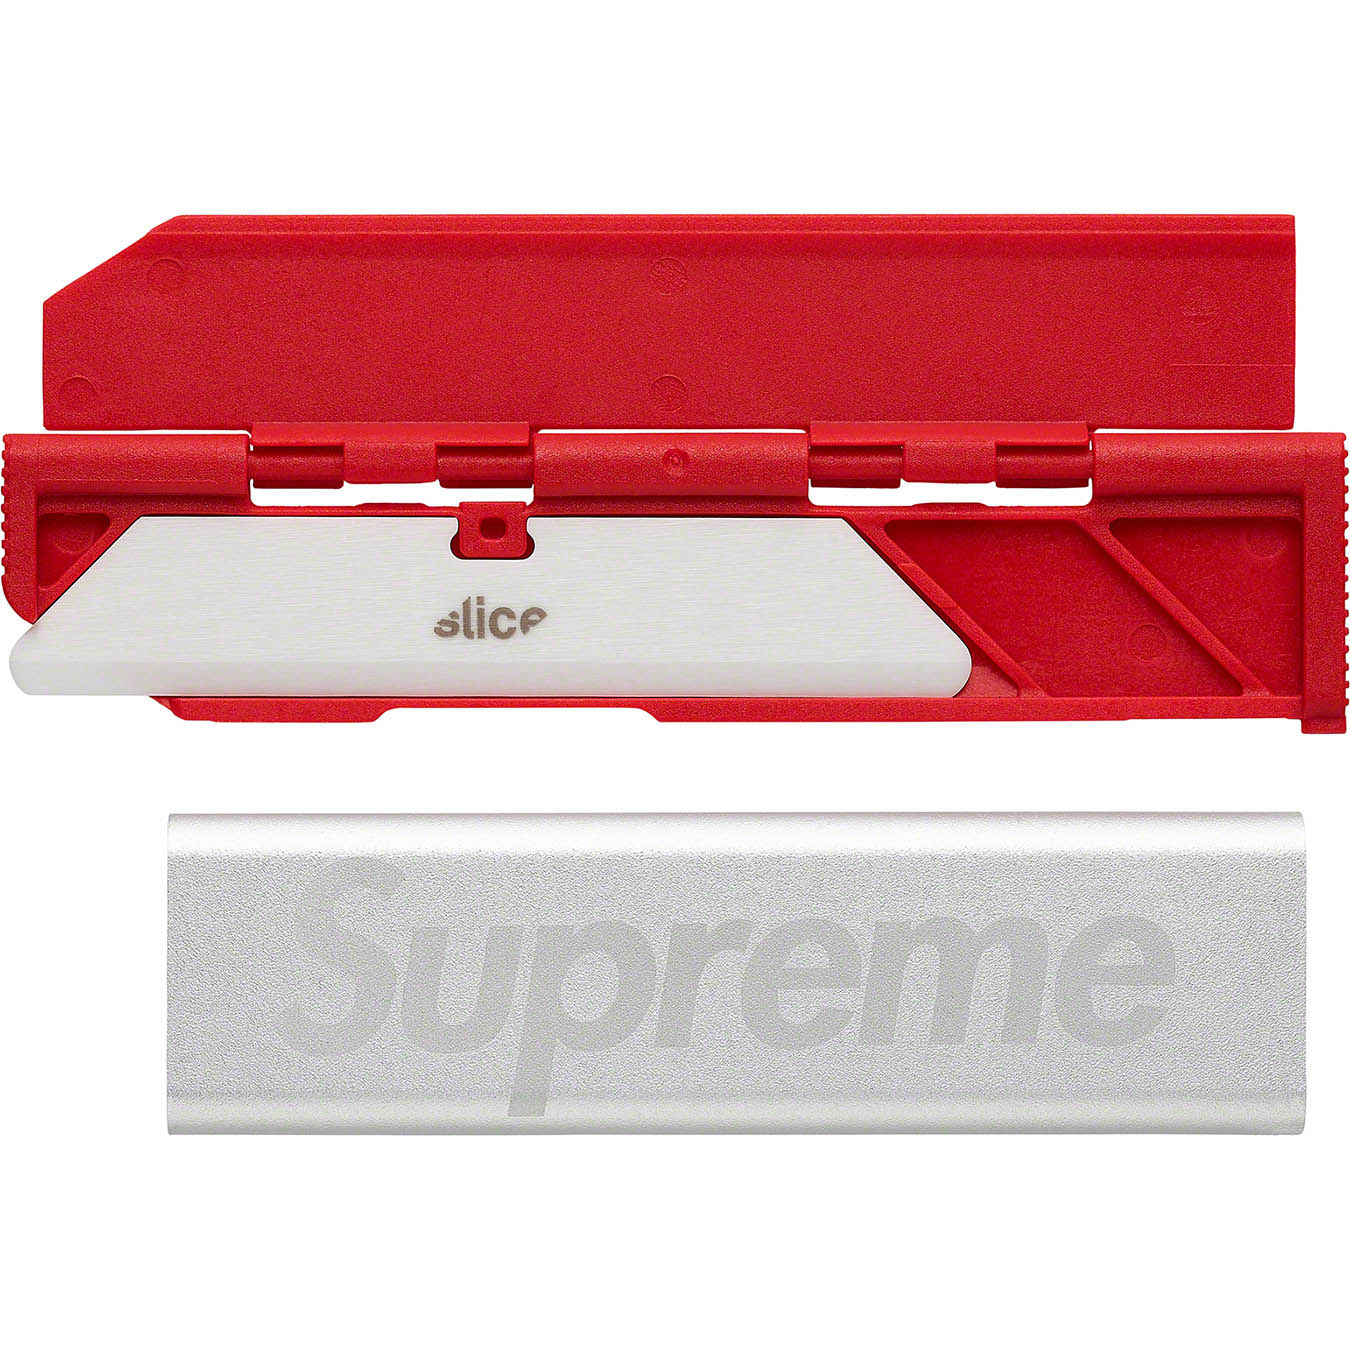 Supreme Supreme®/Slice® Manual Carton Cutter